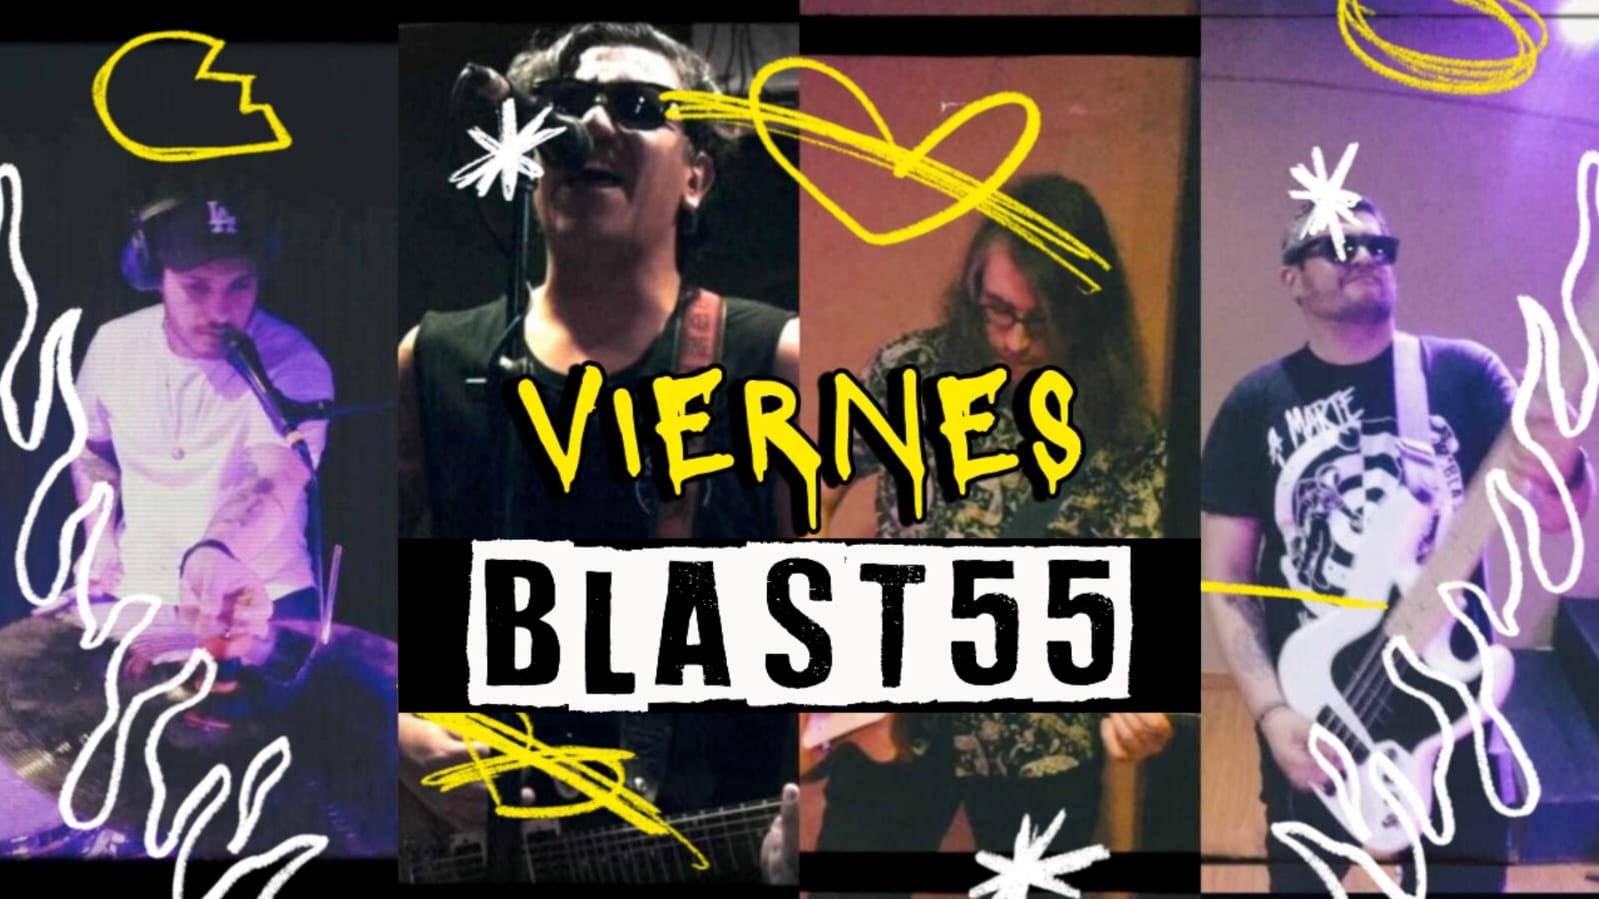 La banda colombiana Blast55 estrena su sencillo ‘Viernes’